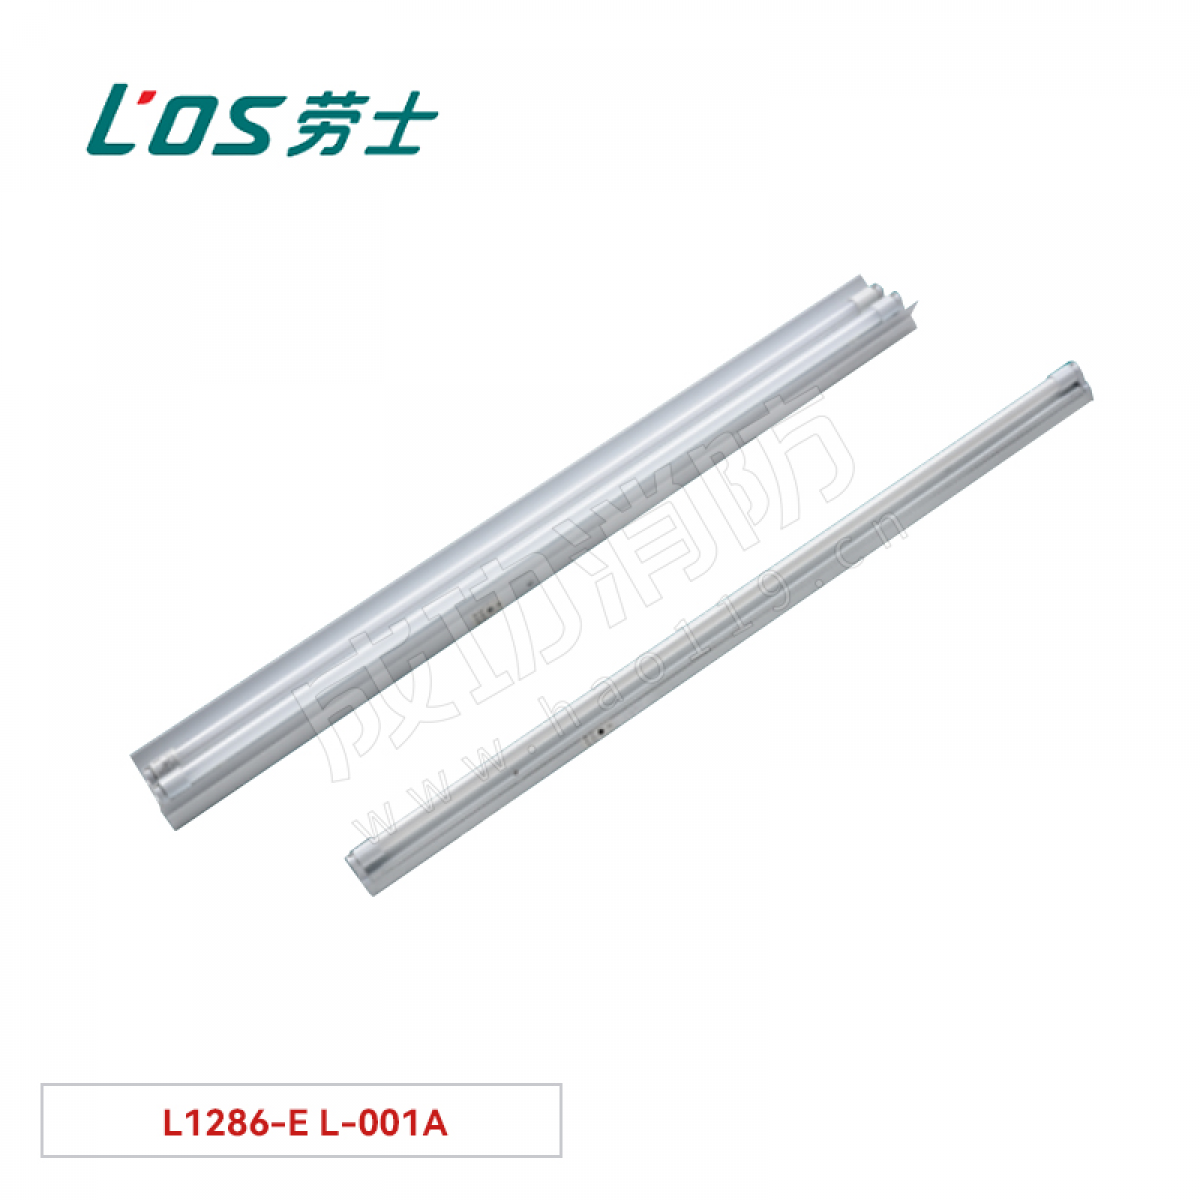 劳士 单管荧光灯(吊装式/墙装式) L1286-E L-001A